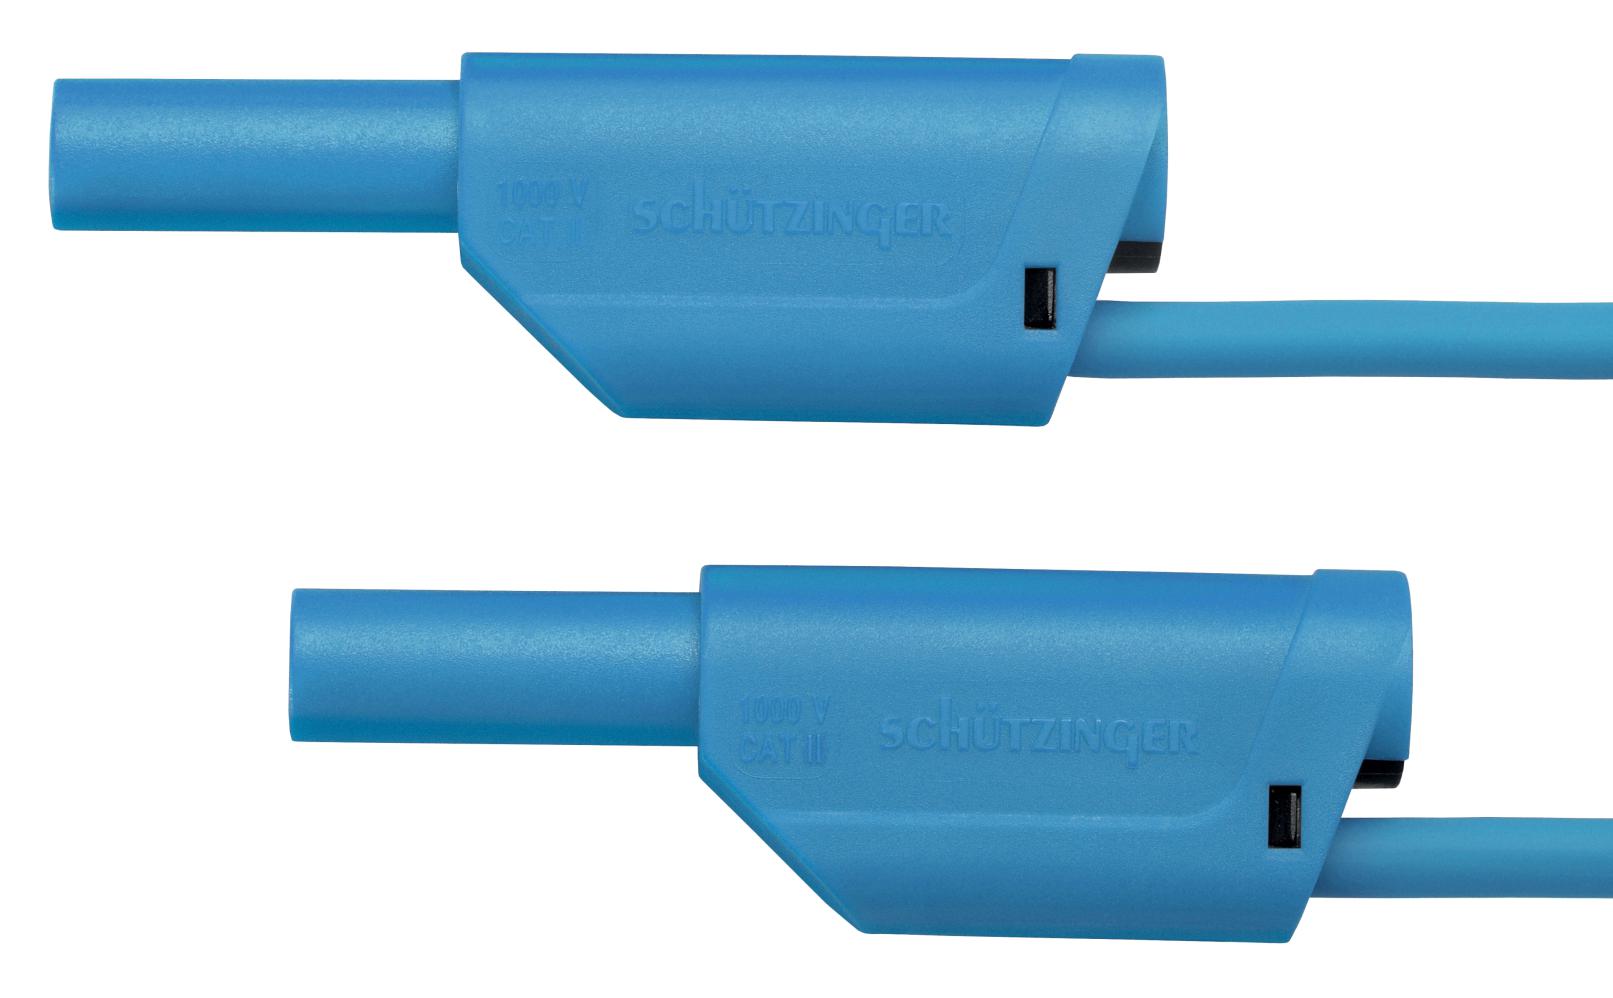 Schutzinger Vsfk 5000 / 1 / 100 / Bl Test Lead, 4mm Stackable Banana Plug, 1M